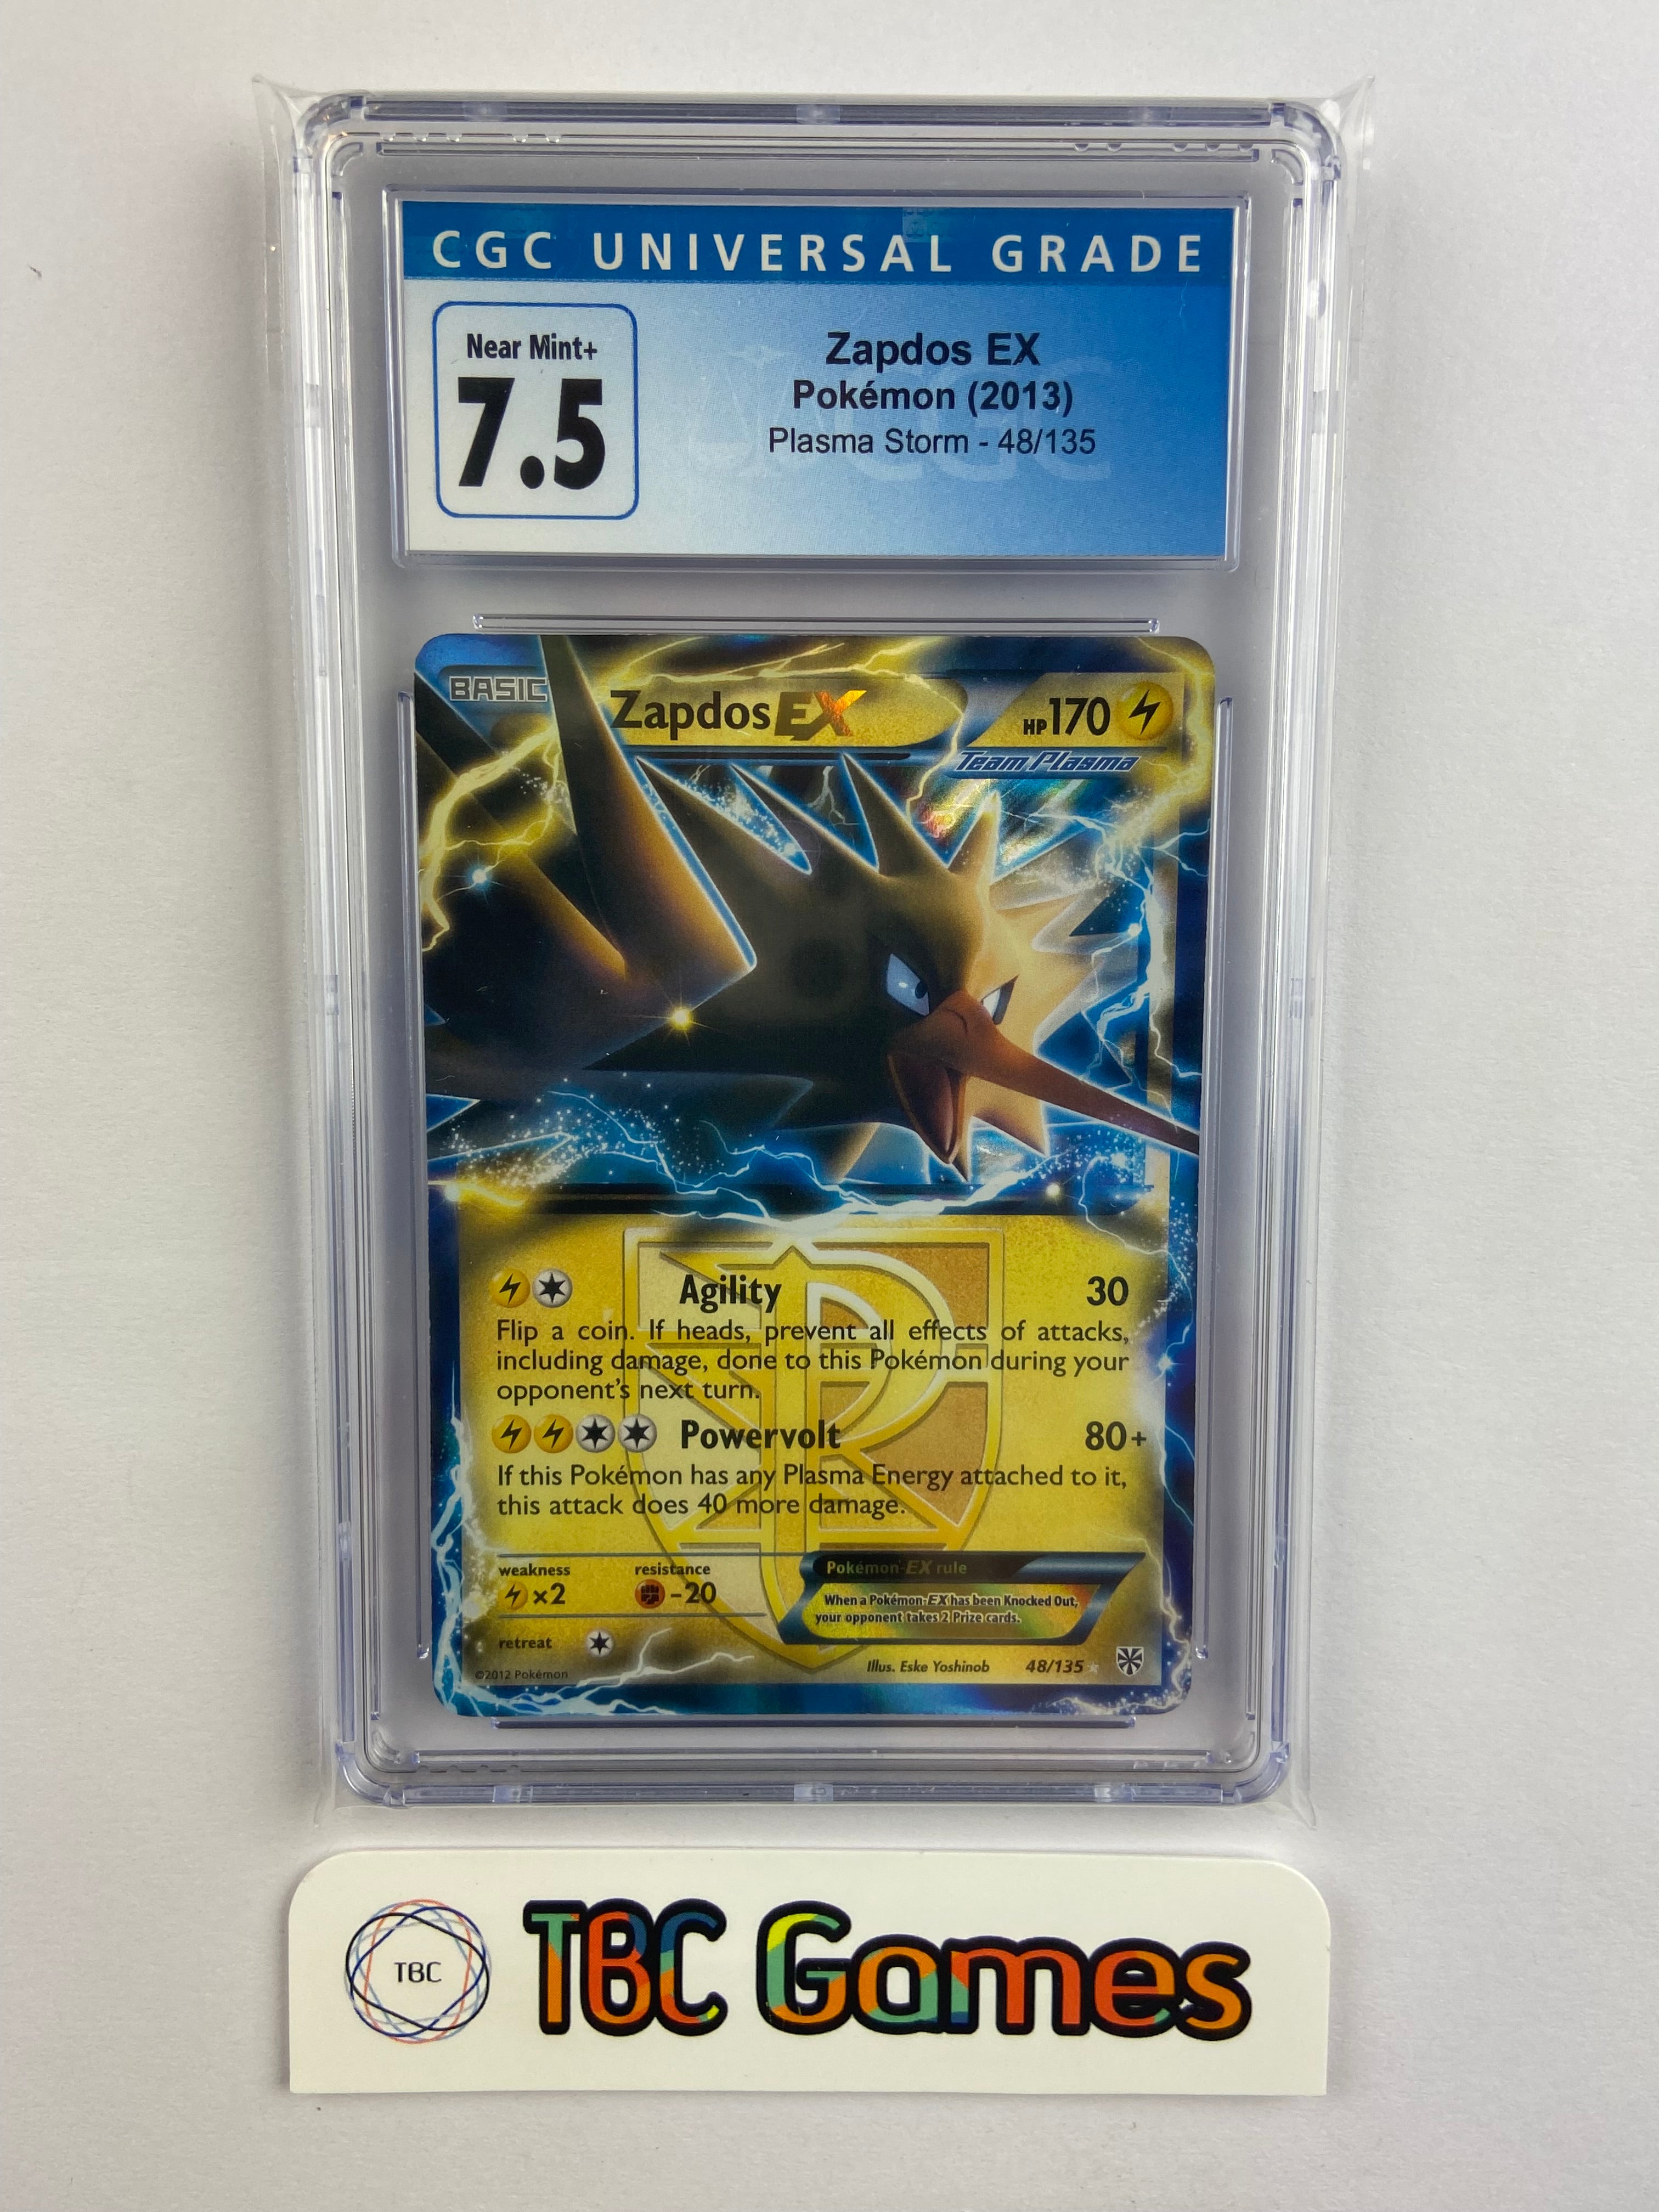 Card Zapdos-EX 48/135 da coleção Plasma Storm